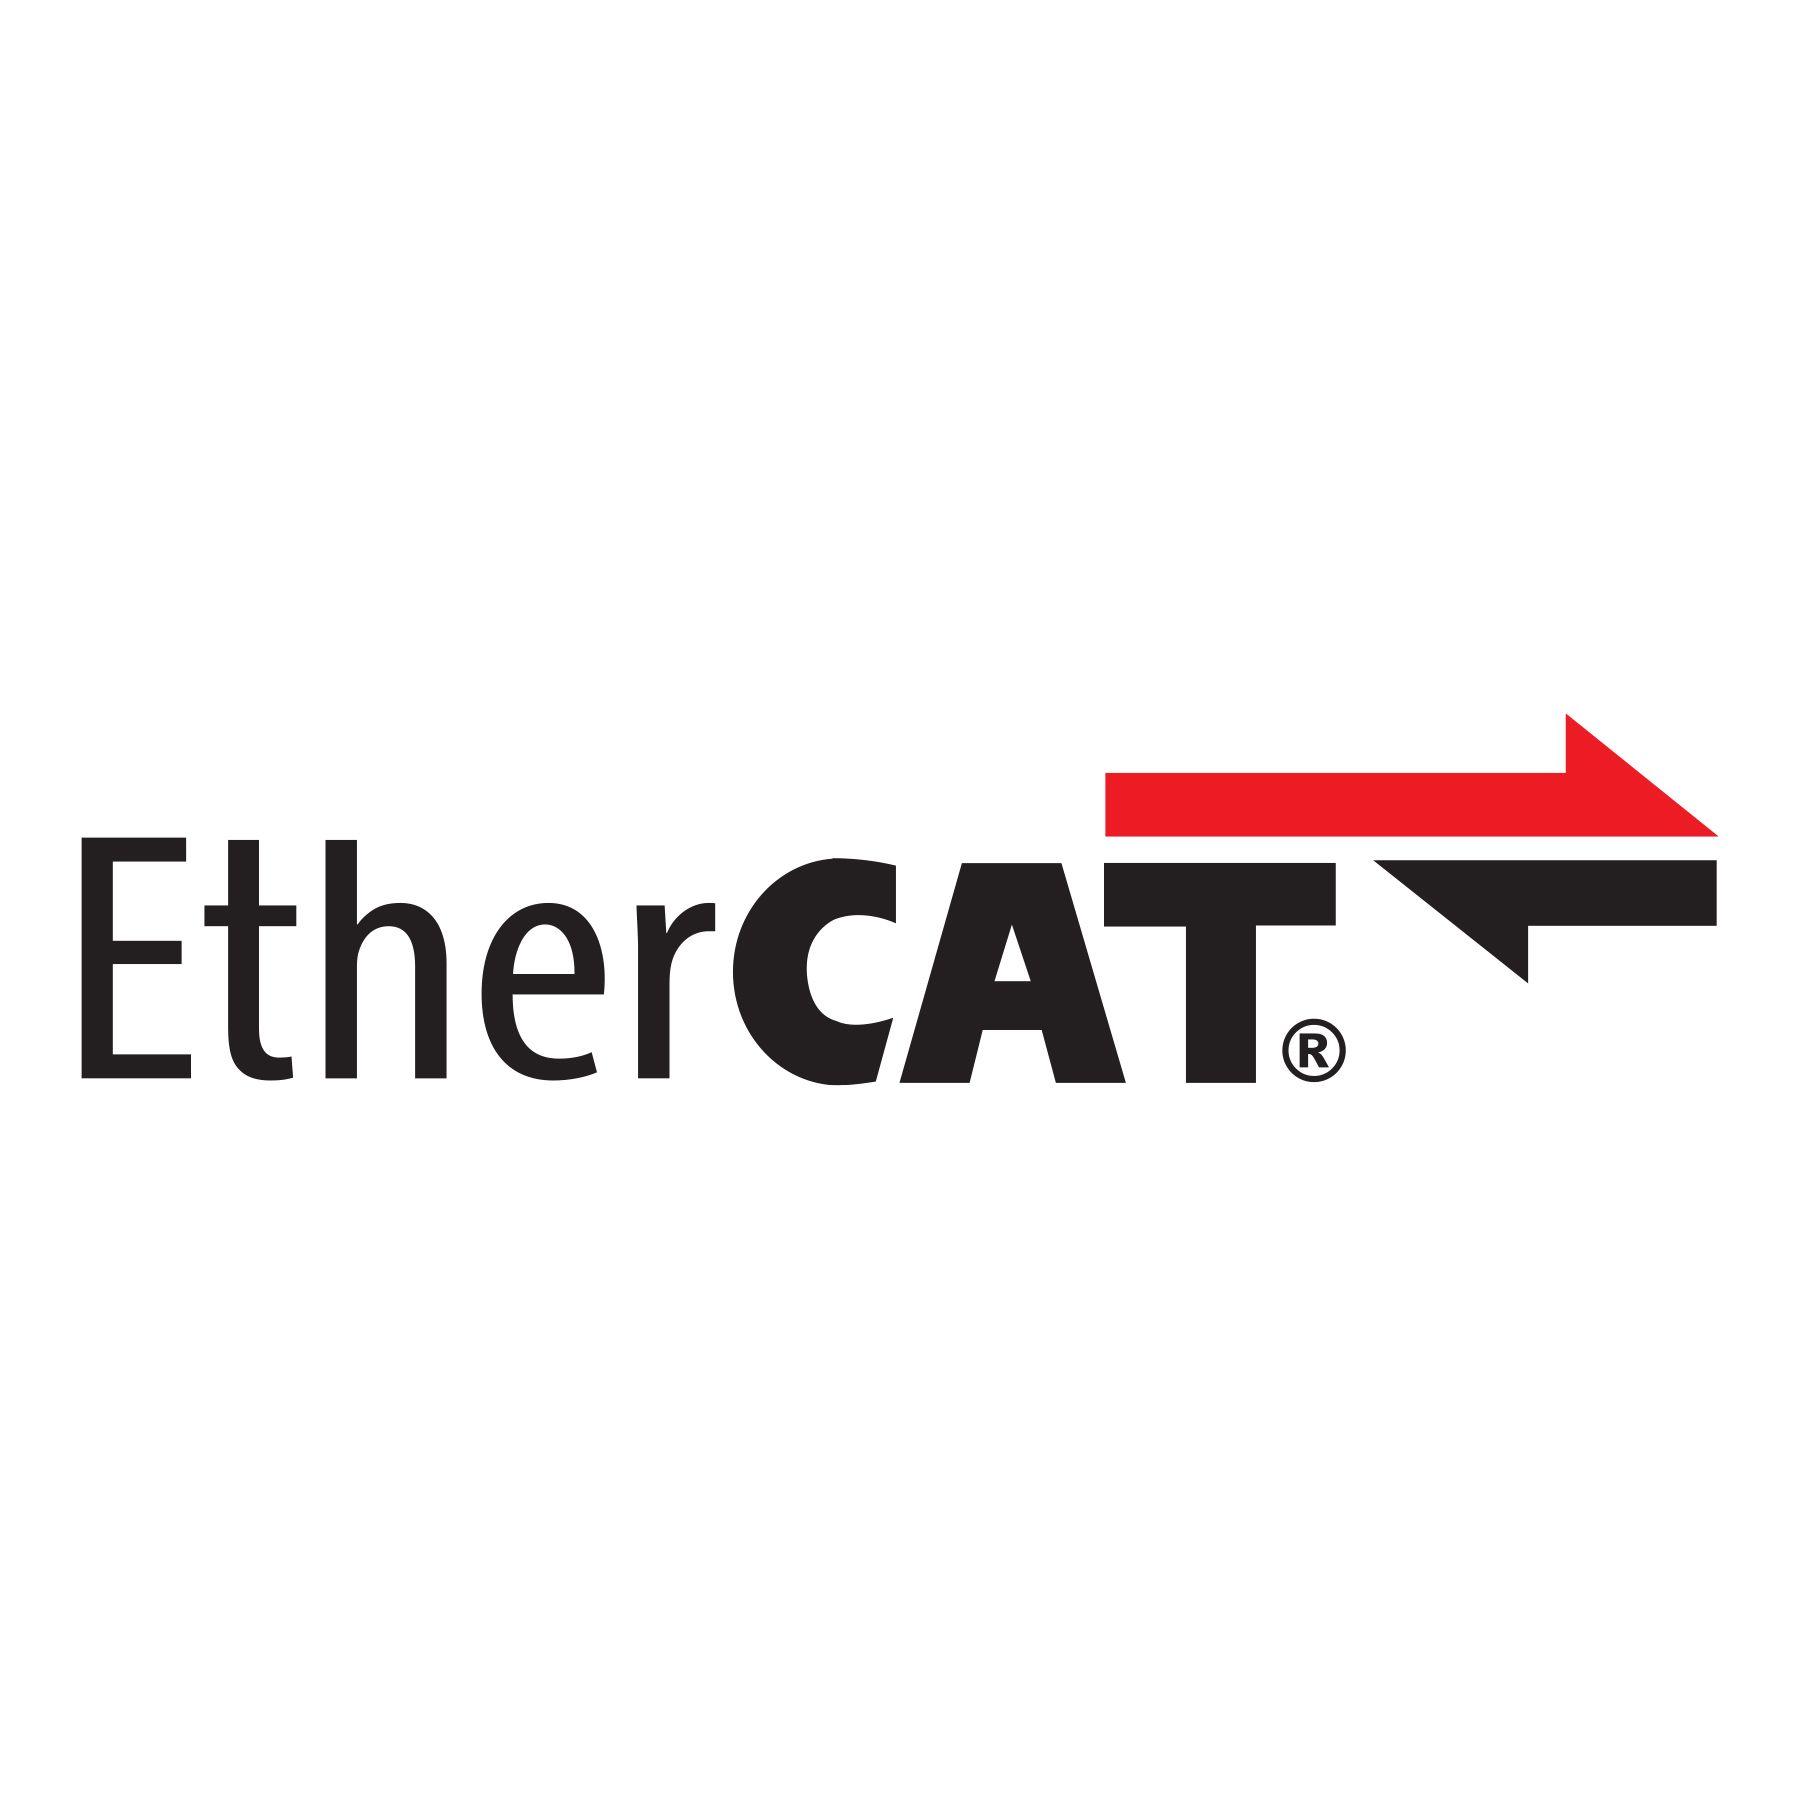 EtherCAT Logo - EtherCAT logo HiRes - FDT Group